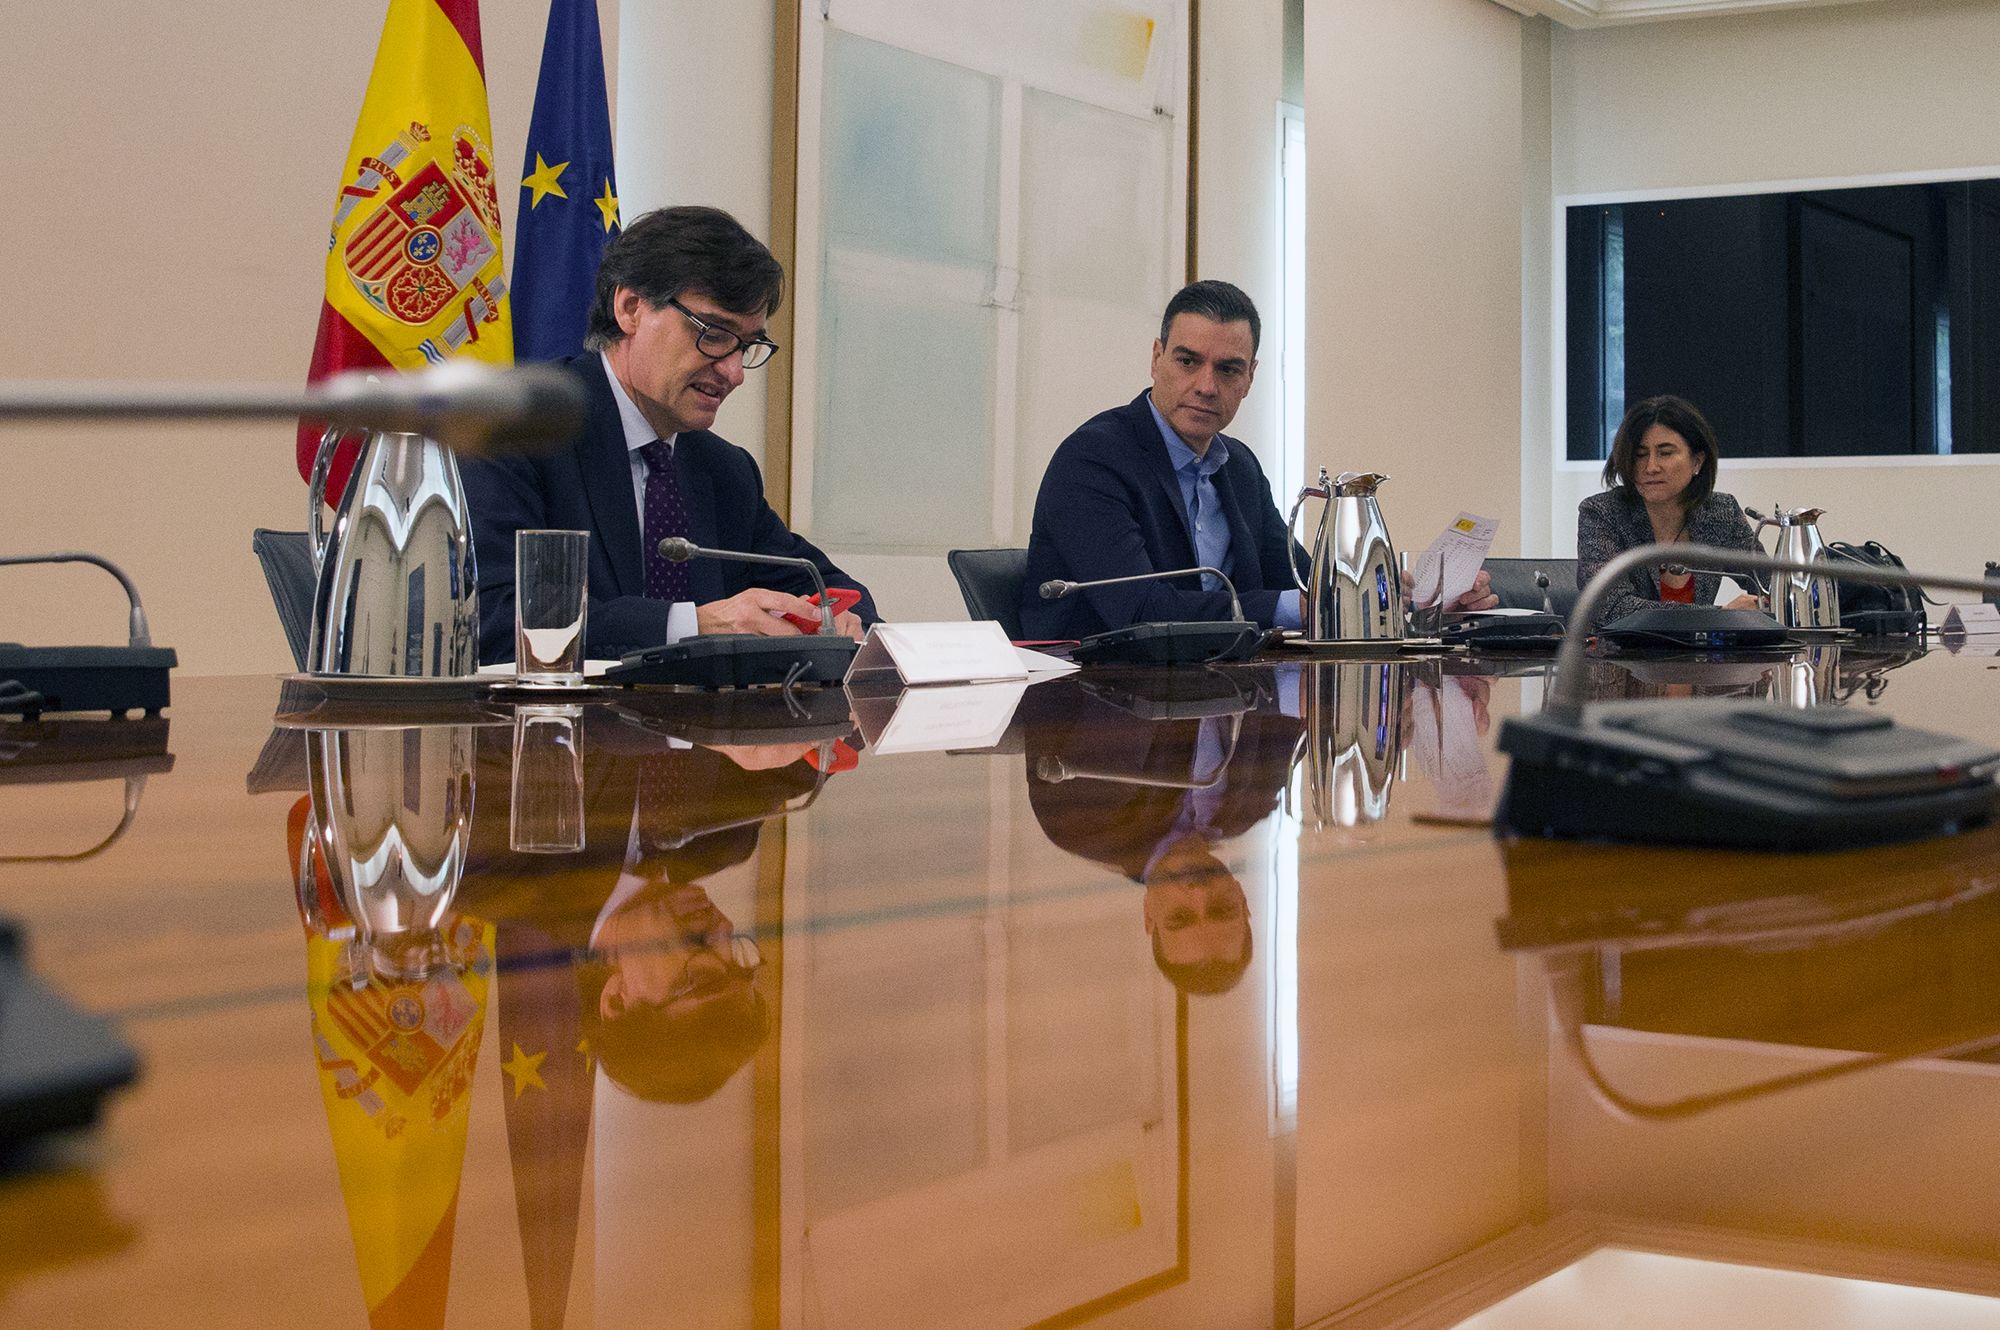 Pedro Sánchez prorroga el estado de alarma hasta el 9 de mayo